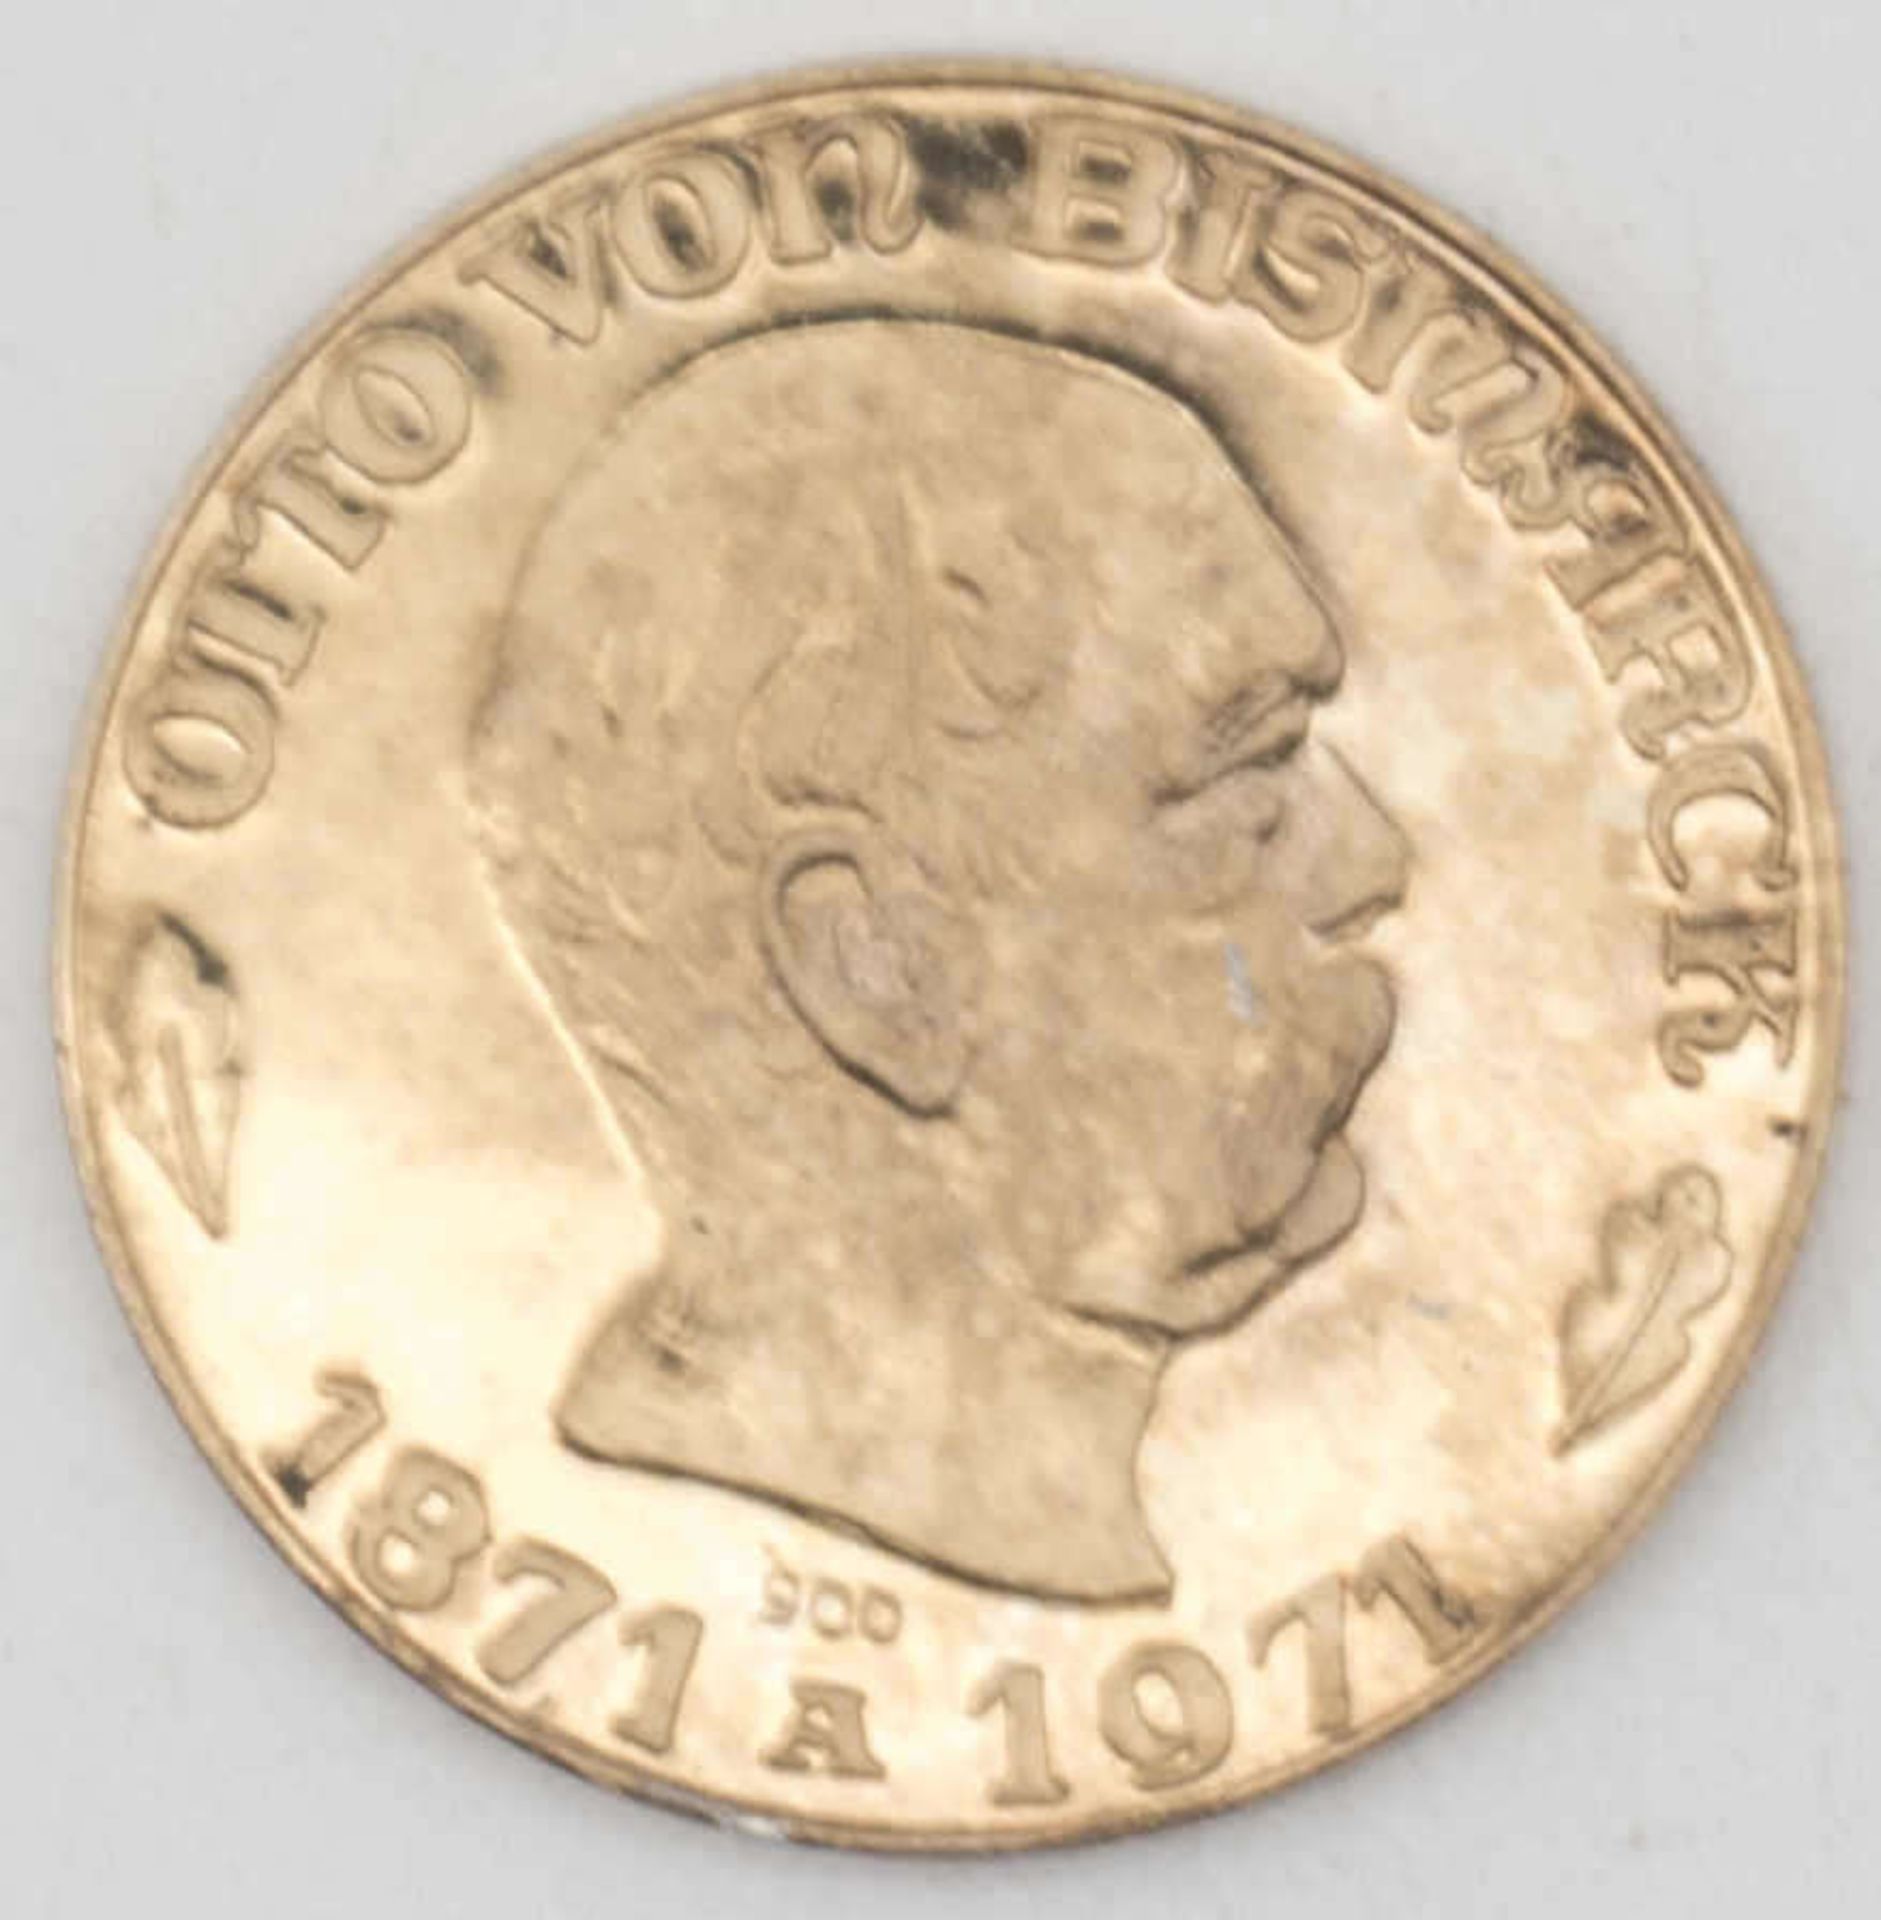 Goldmedaille "Otto von Bismarck" - Ewig lebt der Reichskanzler. Gold 900. Gewicht: ca. 6,5 g.